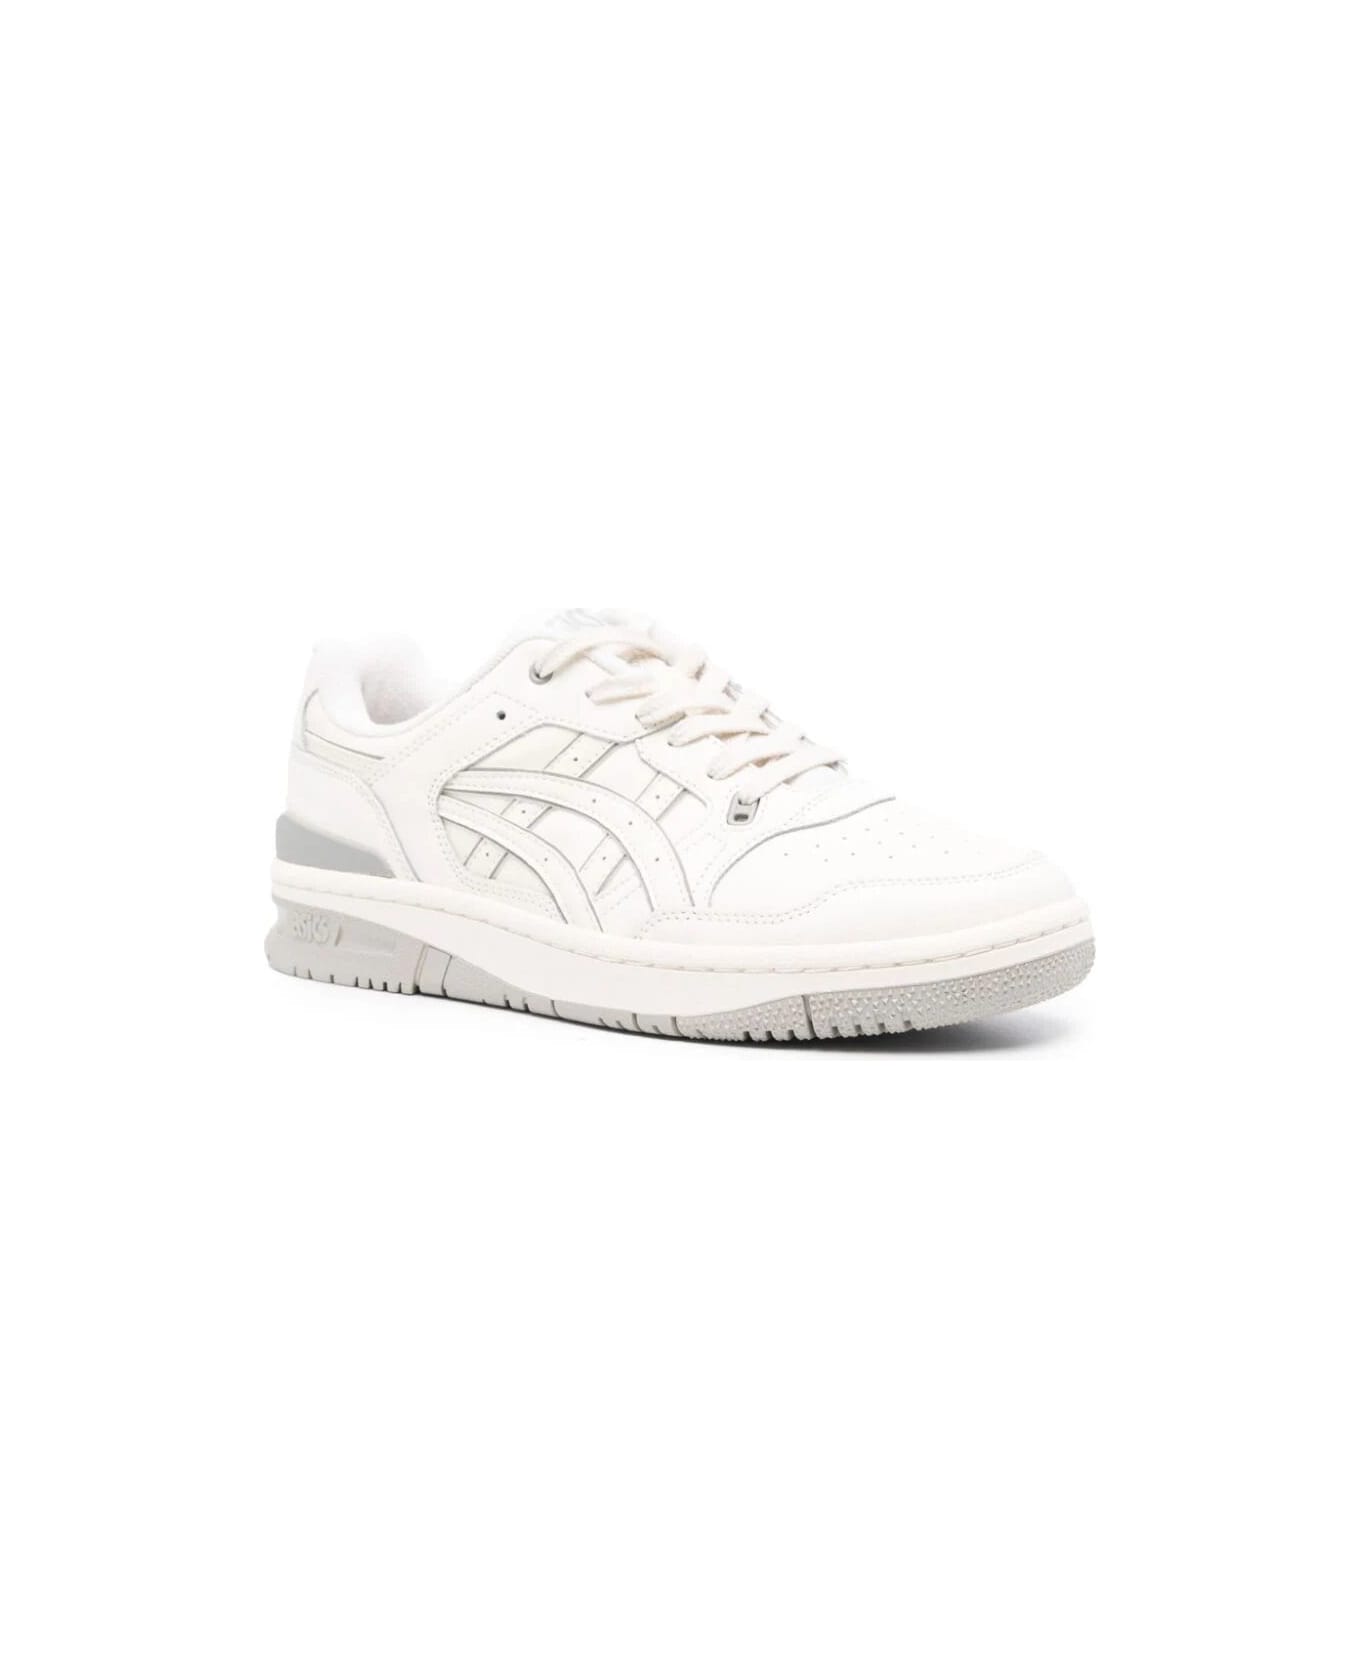 Asics Ex89 Sneakers - Cream White Sage